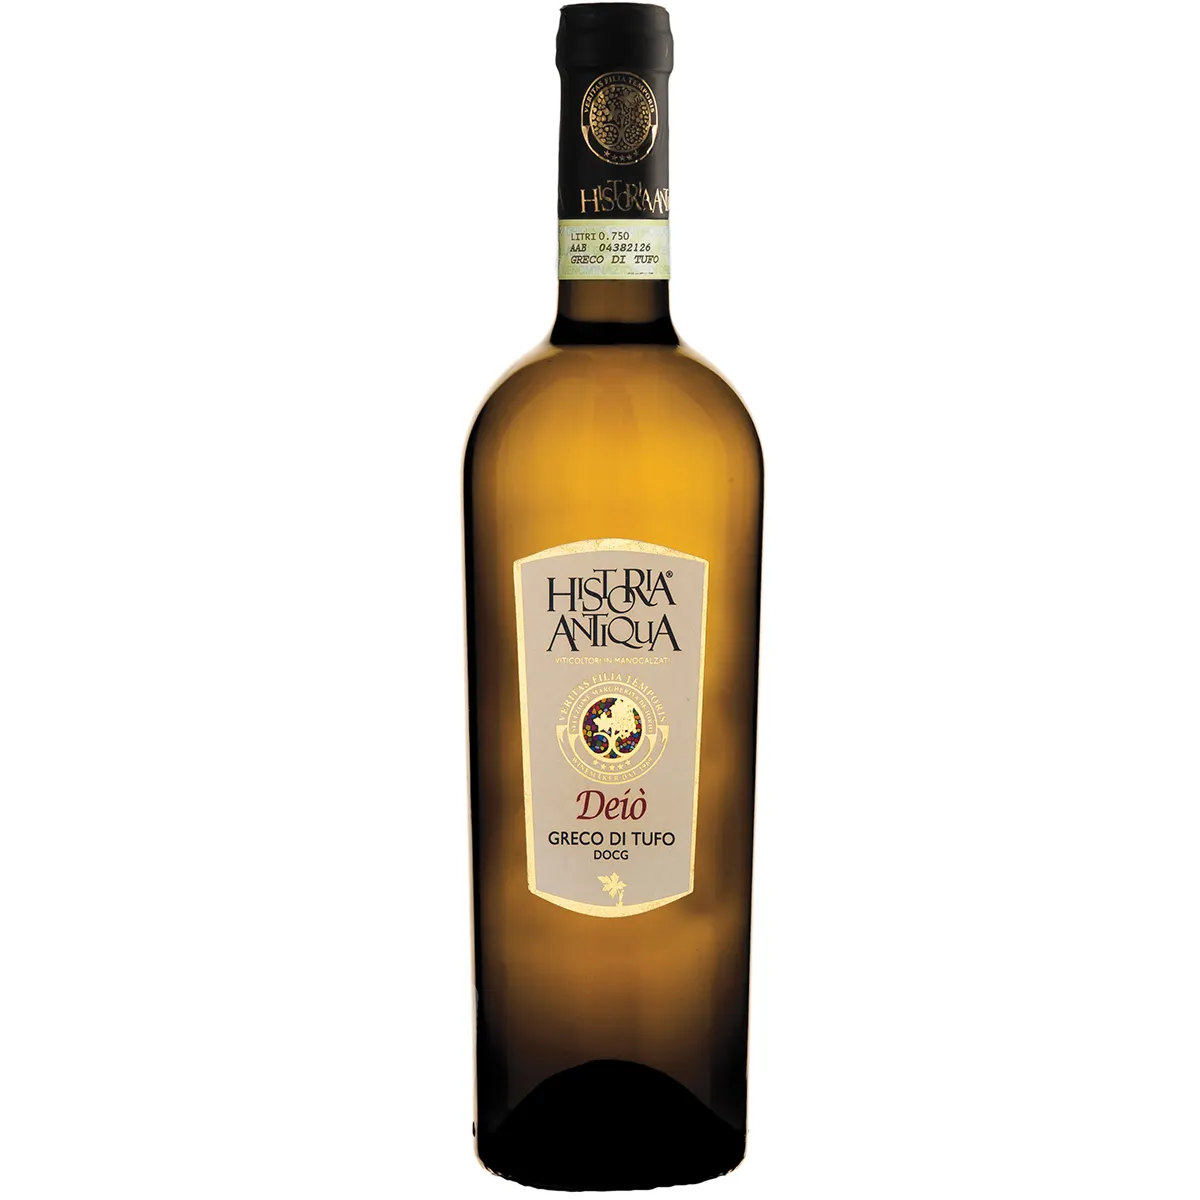 Yüksek kaliteli İtalyan şarap DEJO GRECO DI TUFO DOCG demlenmiş meşe carats, sahiptir sarı <span class=keywords><strong>altın</strong></span> renk